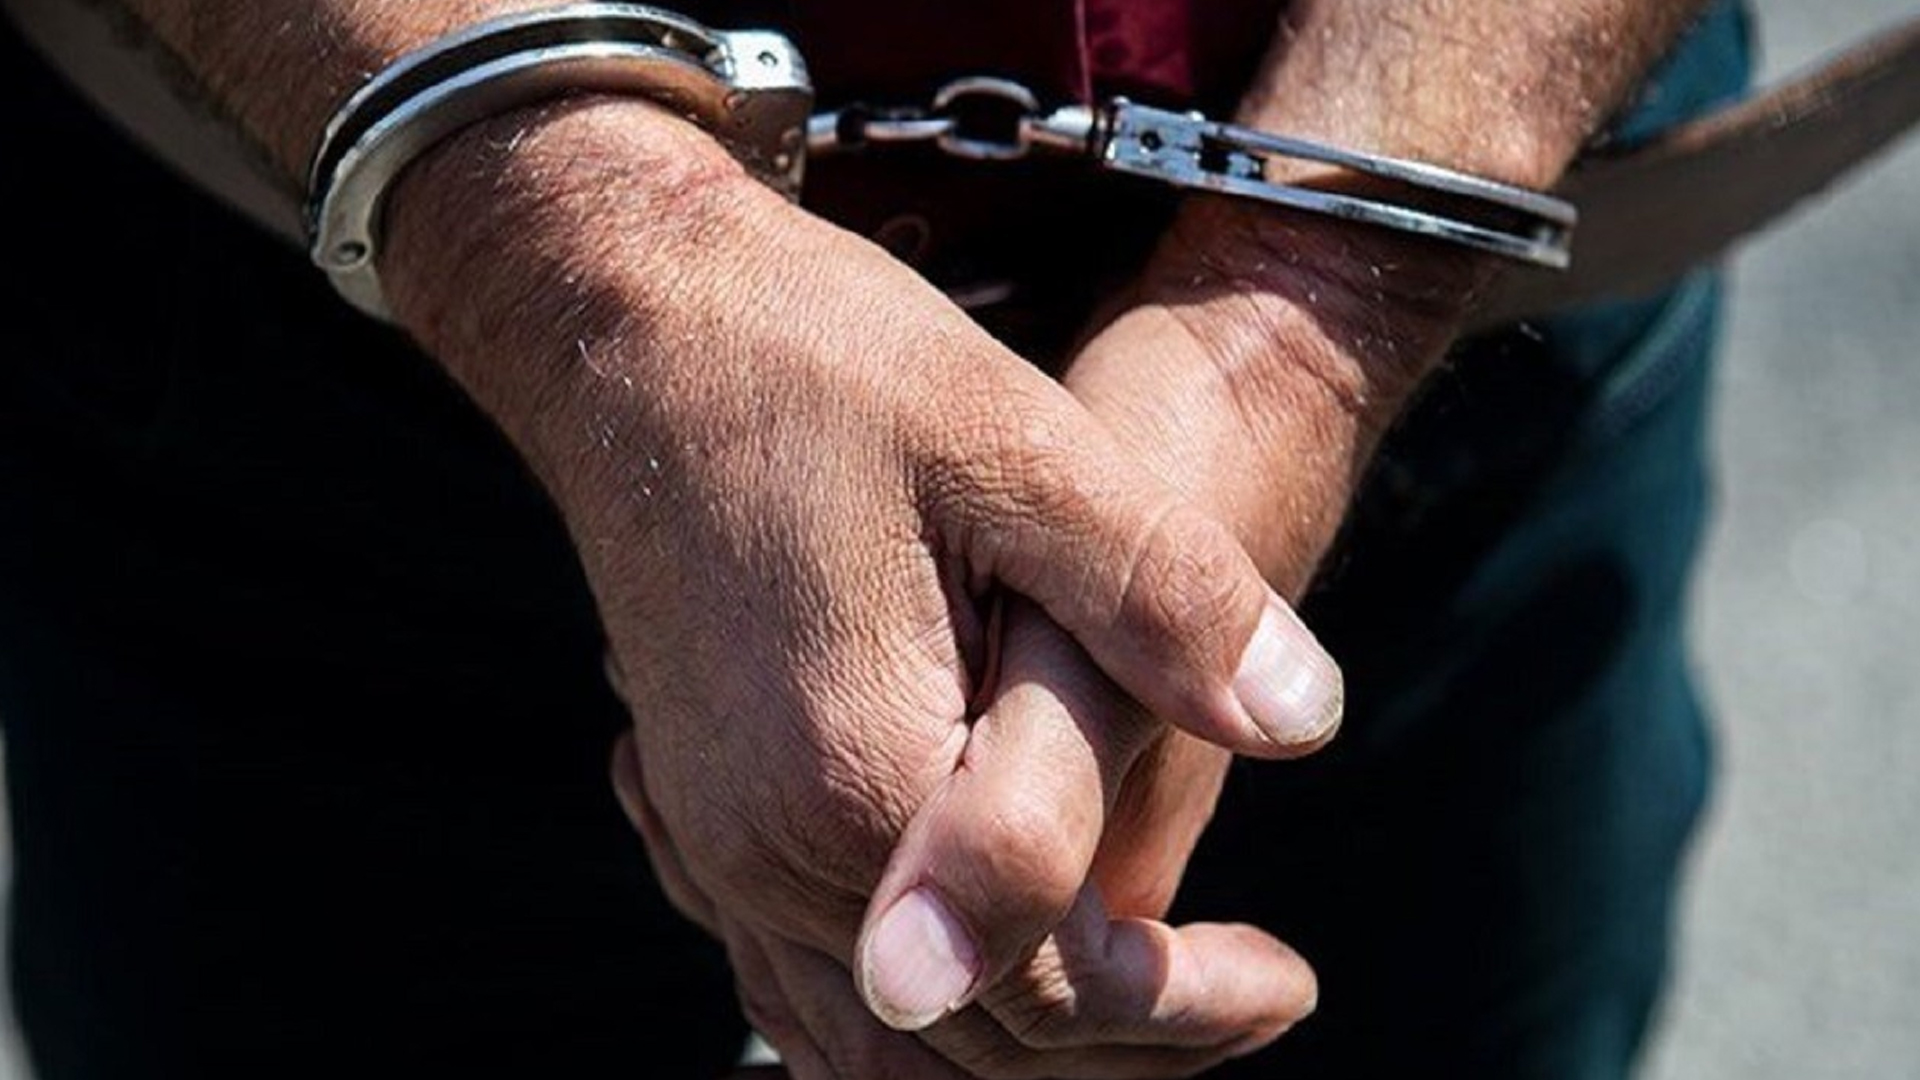  180 Men Arrested in Kunduz in Past 3 Months